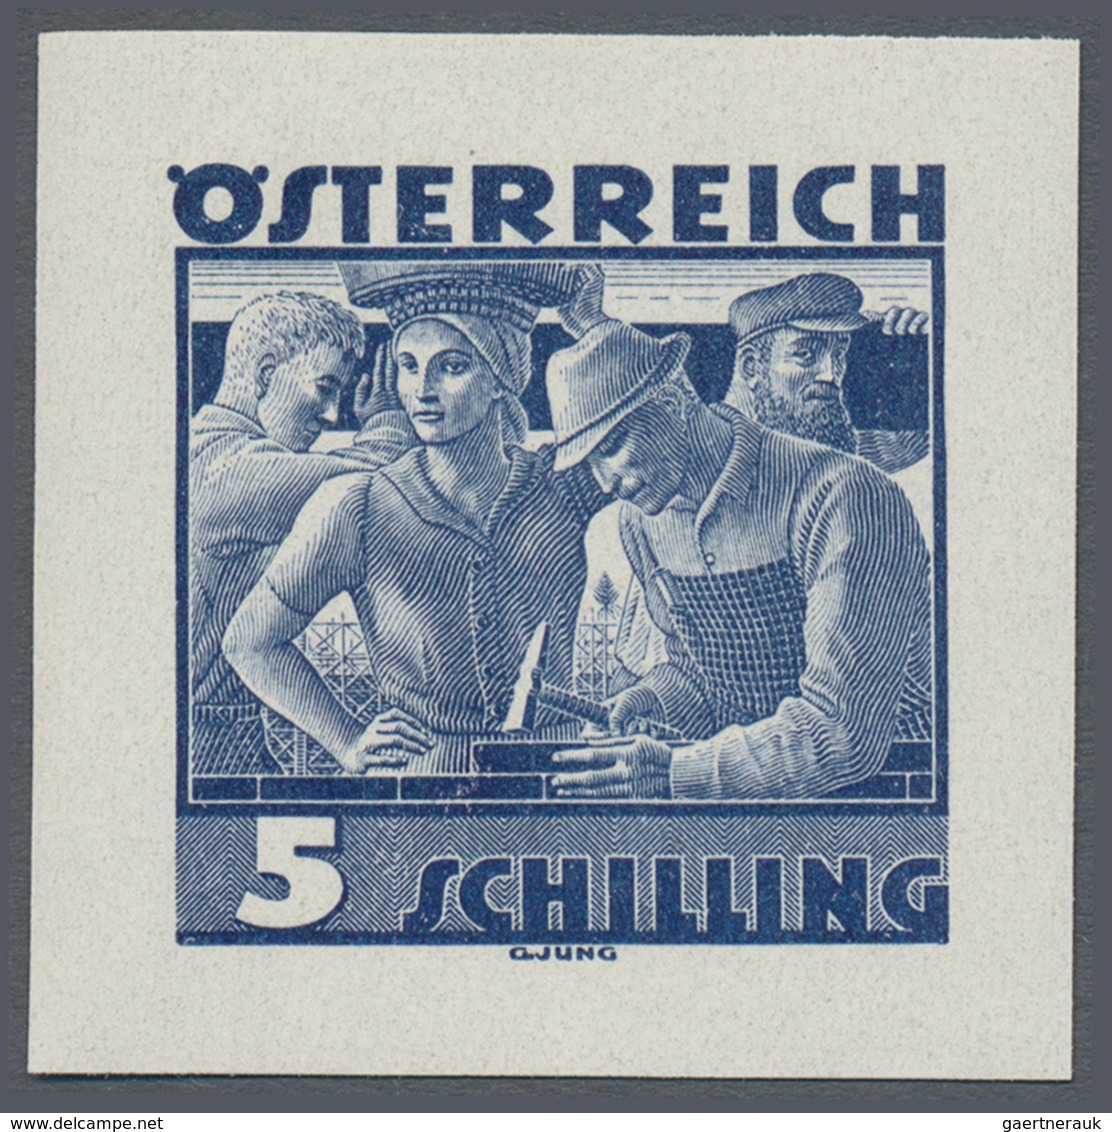 Österreich: 1934, Freimarken "Trachten", 5 Sch. "Städtische Arbeit", sechs ungezähnte Buchdruck-Prob